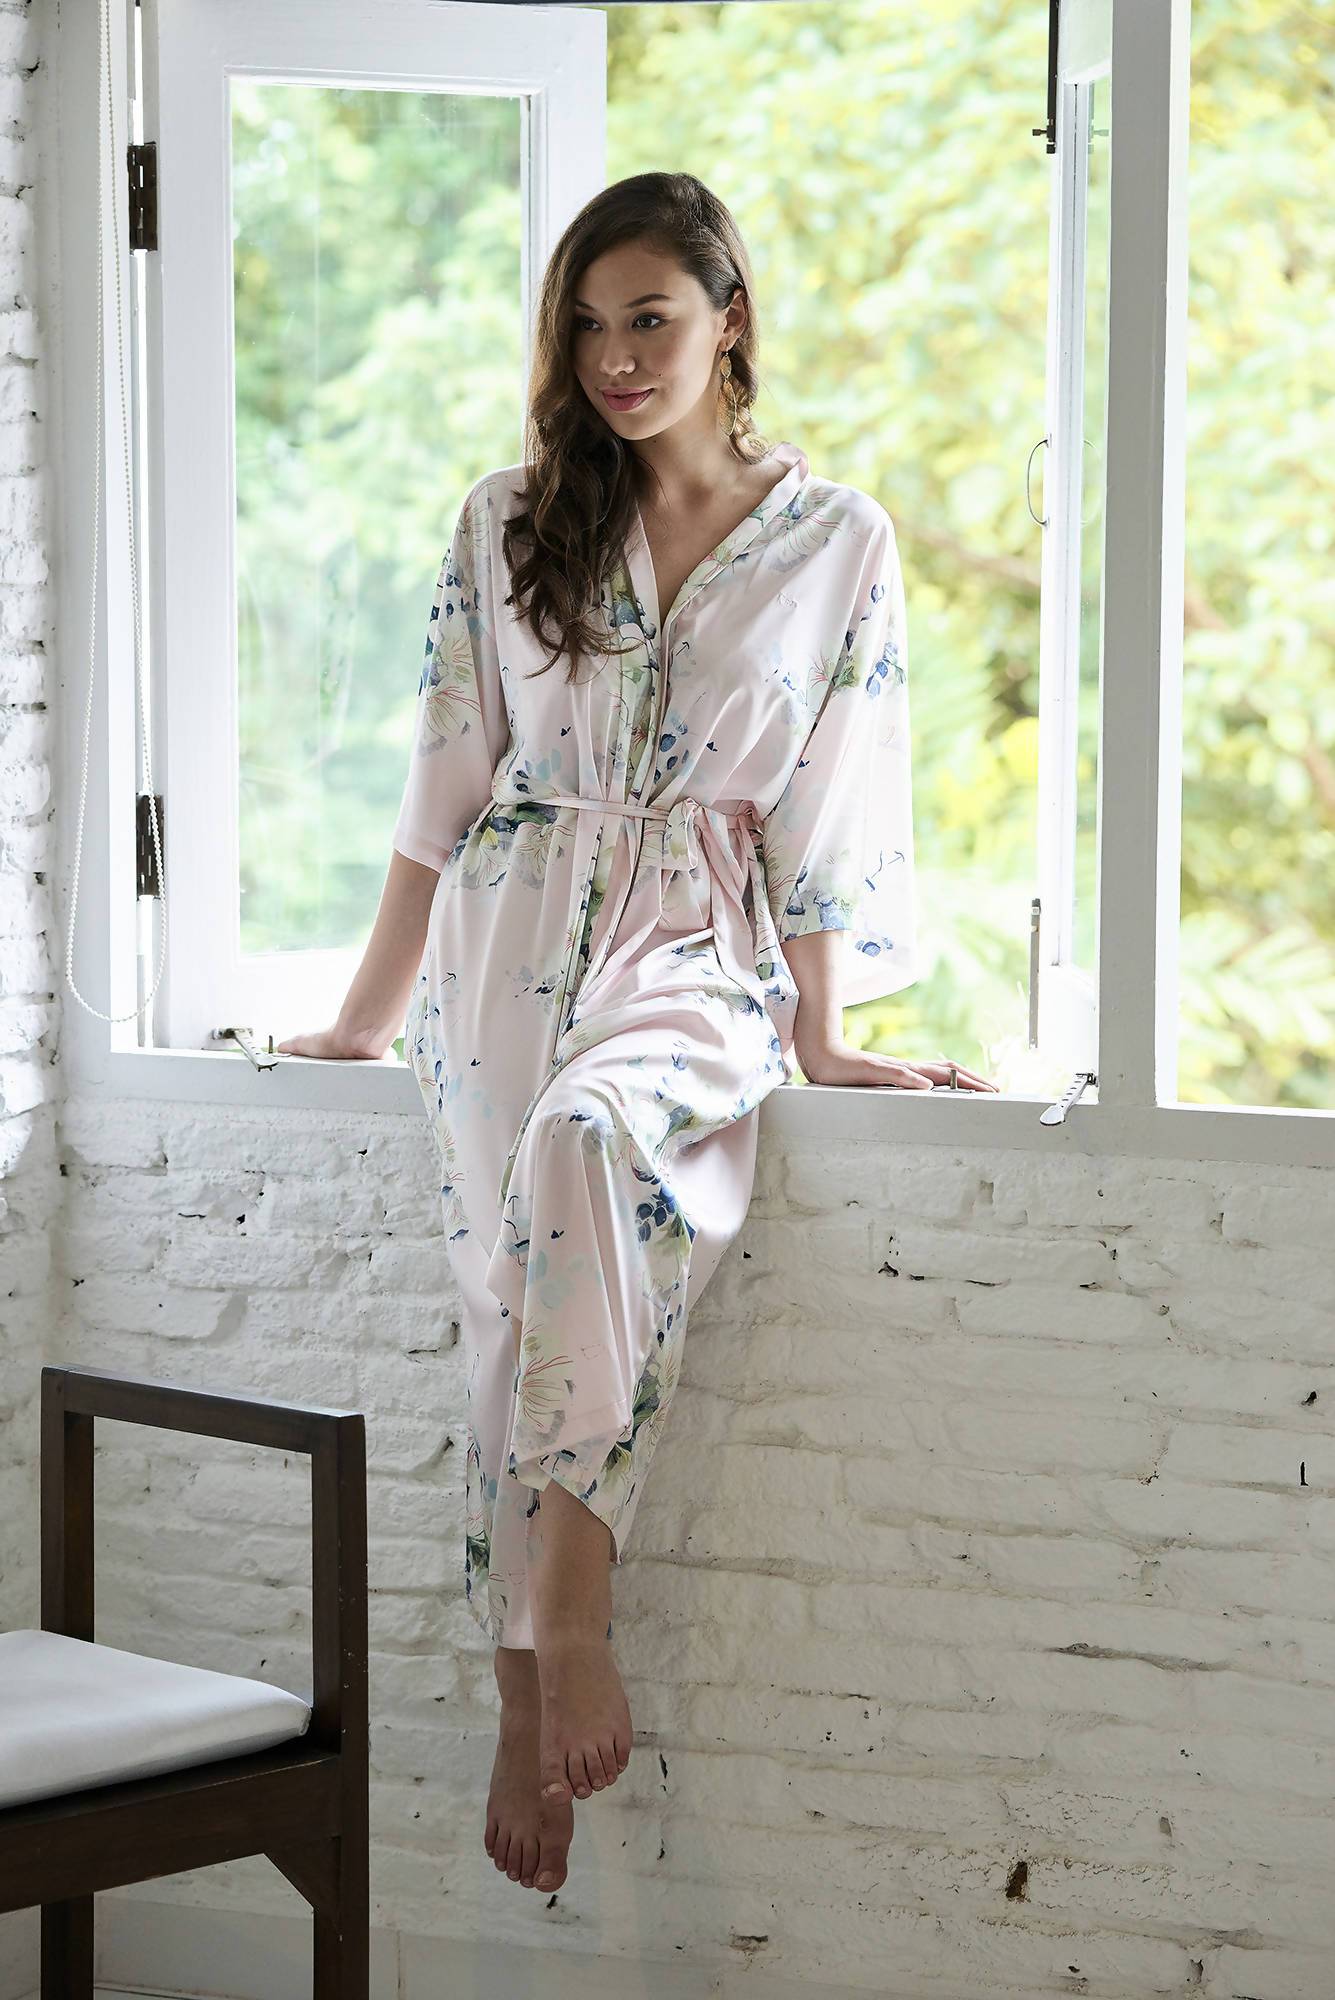 Amaryllis Kimono Robe (Ankle) - Sleepwear for Women - The Mariposa Collection - Naiise